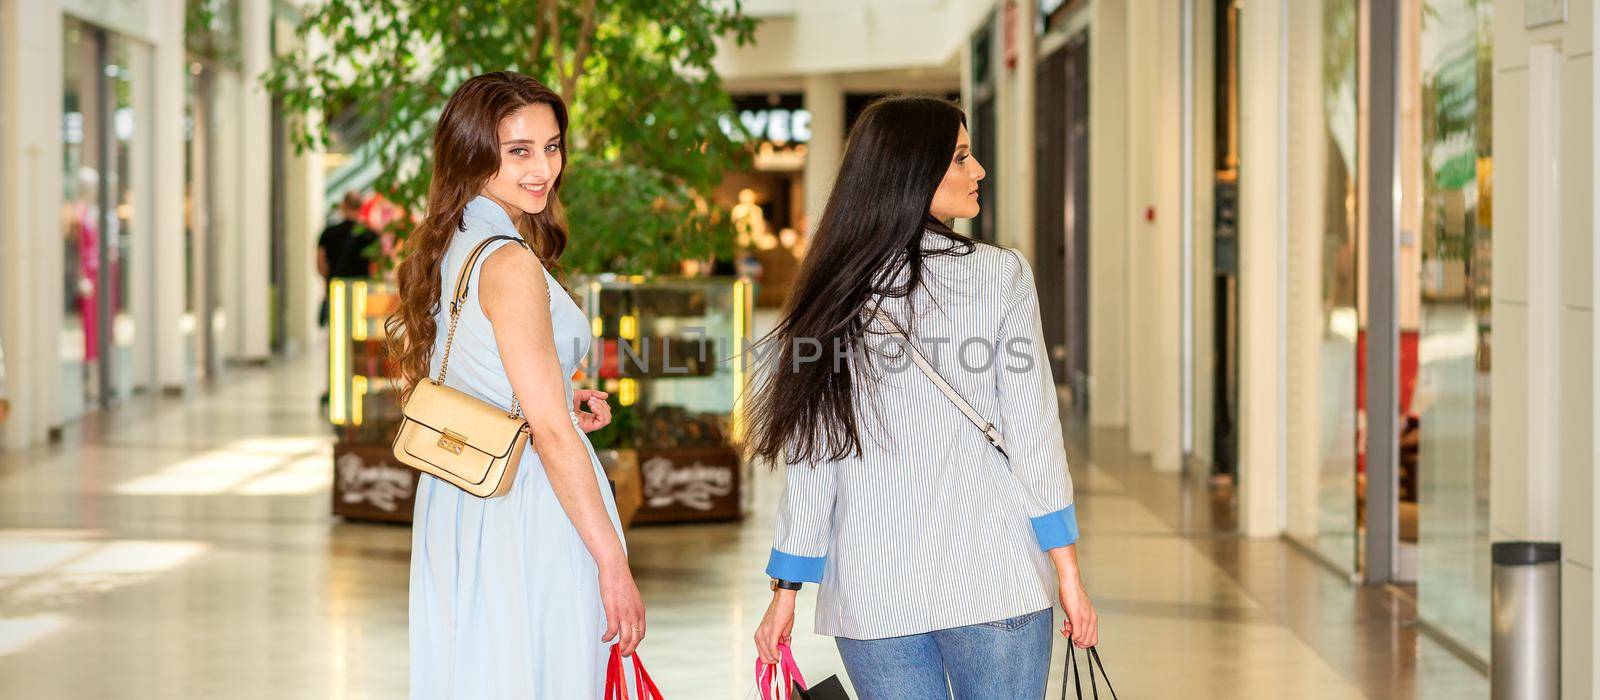 Two women walking in shopping mall by okskukuruza